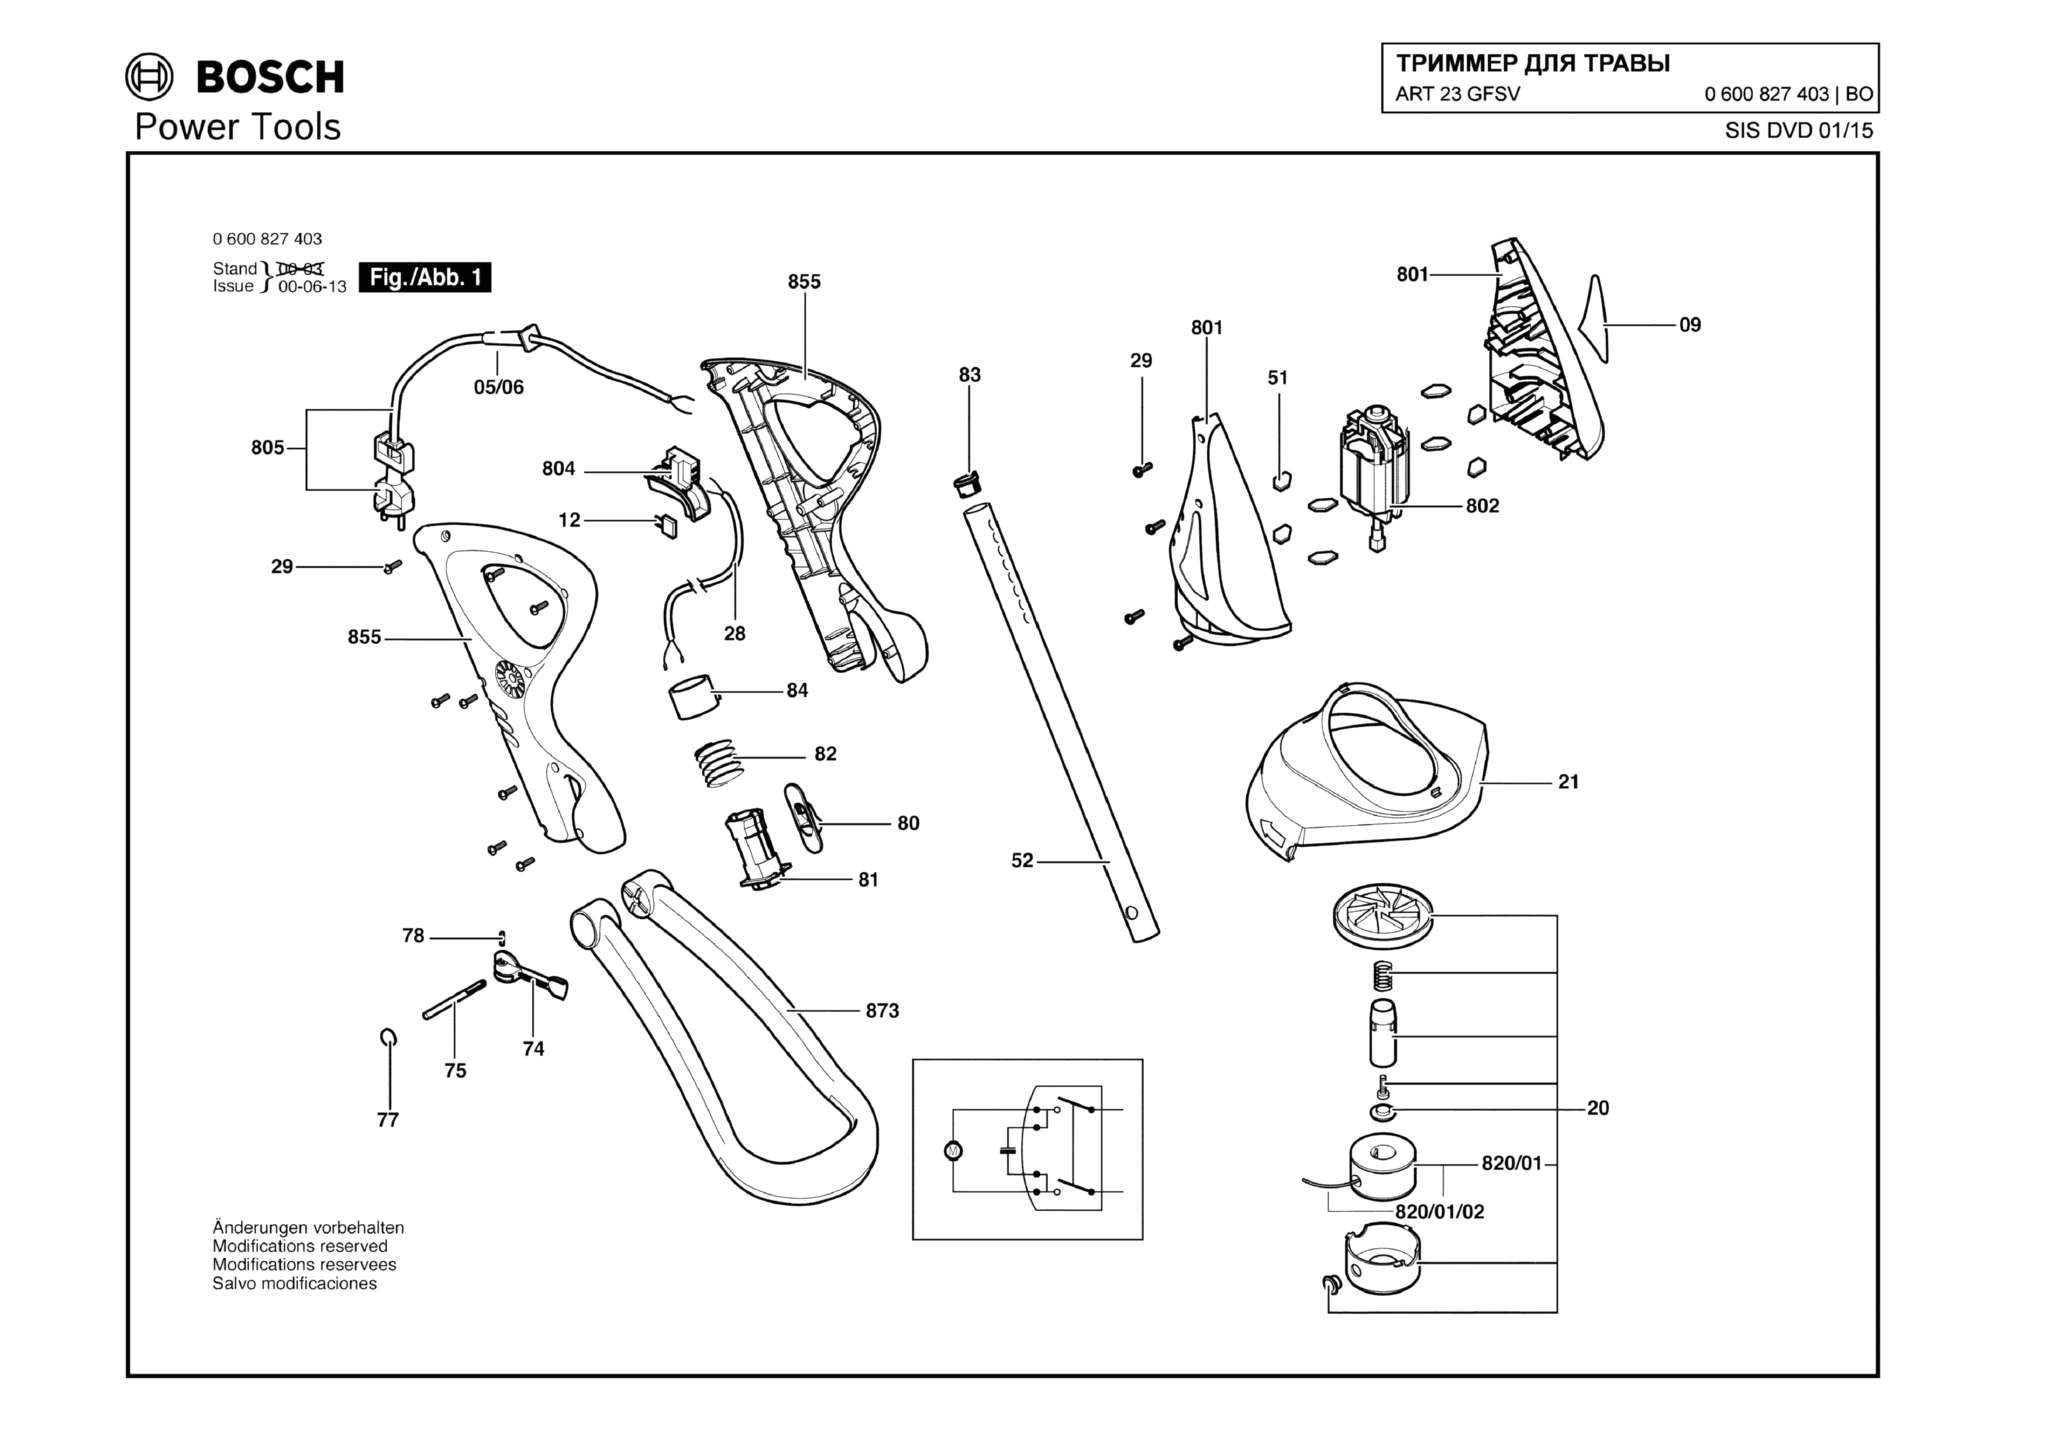 Запчасти, схема и деталировка Bosch ART 23 GFSV (ТИП 0600827403)